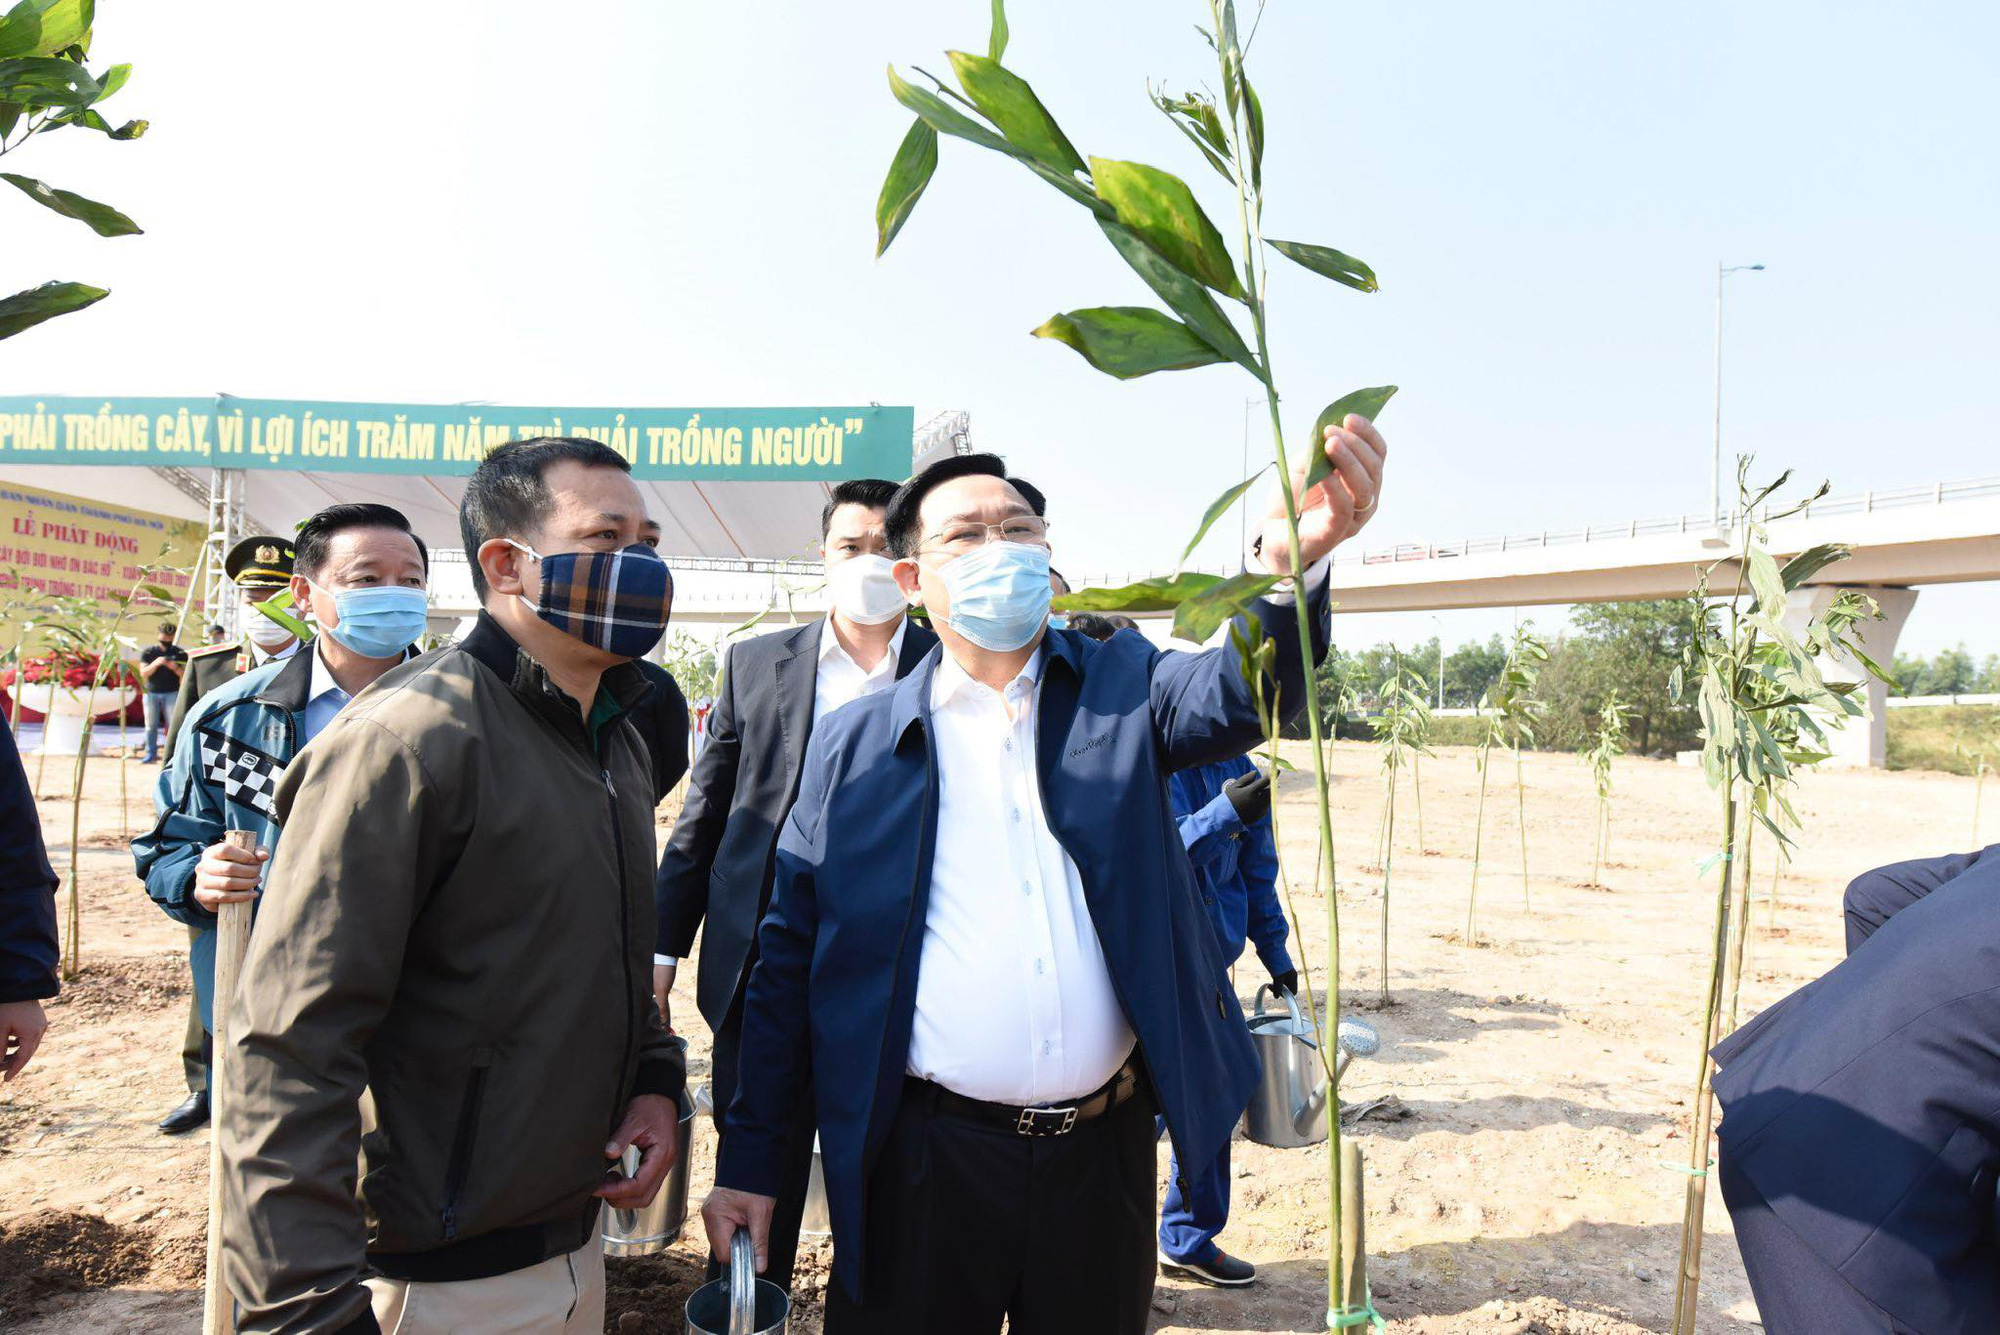 Bí thư, Chủ tịch Hà Nội trồng cây xanh đầu năm, kêu gọi người dân trồng 1 tỷ cây xanh - Ảnh 3.